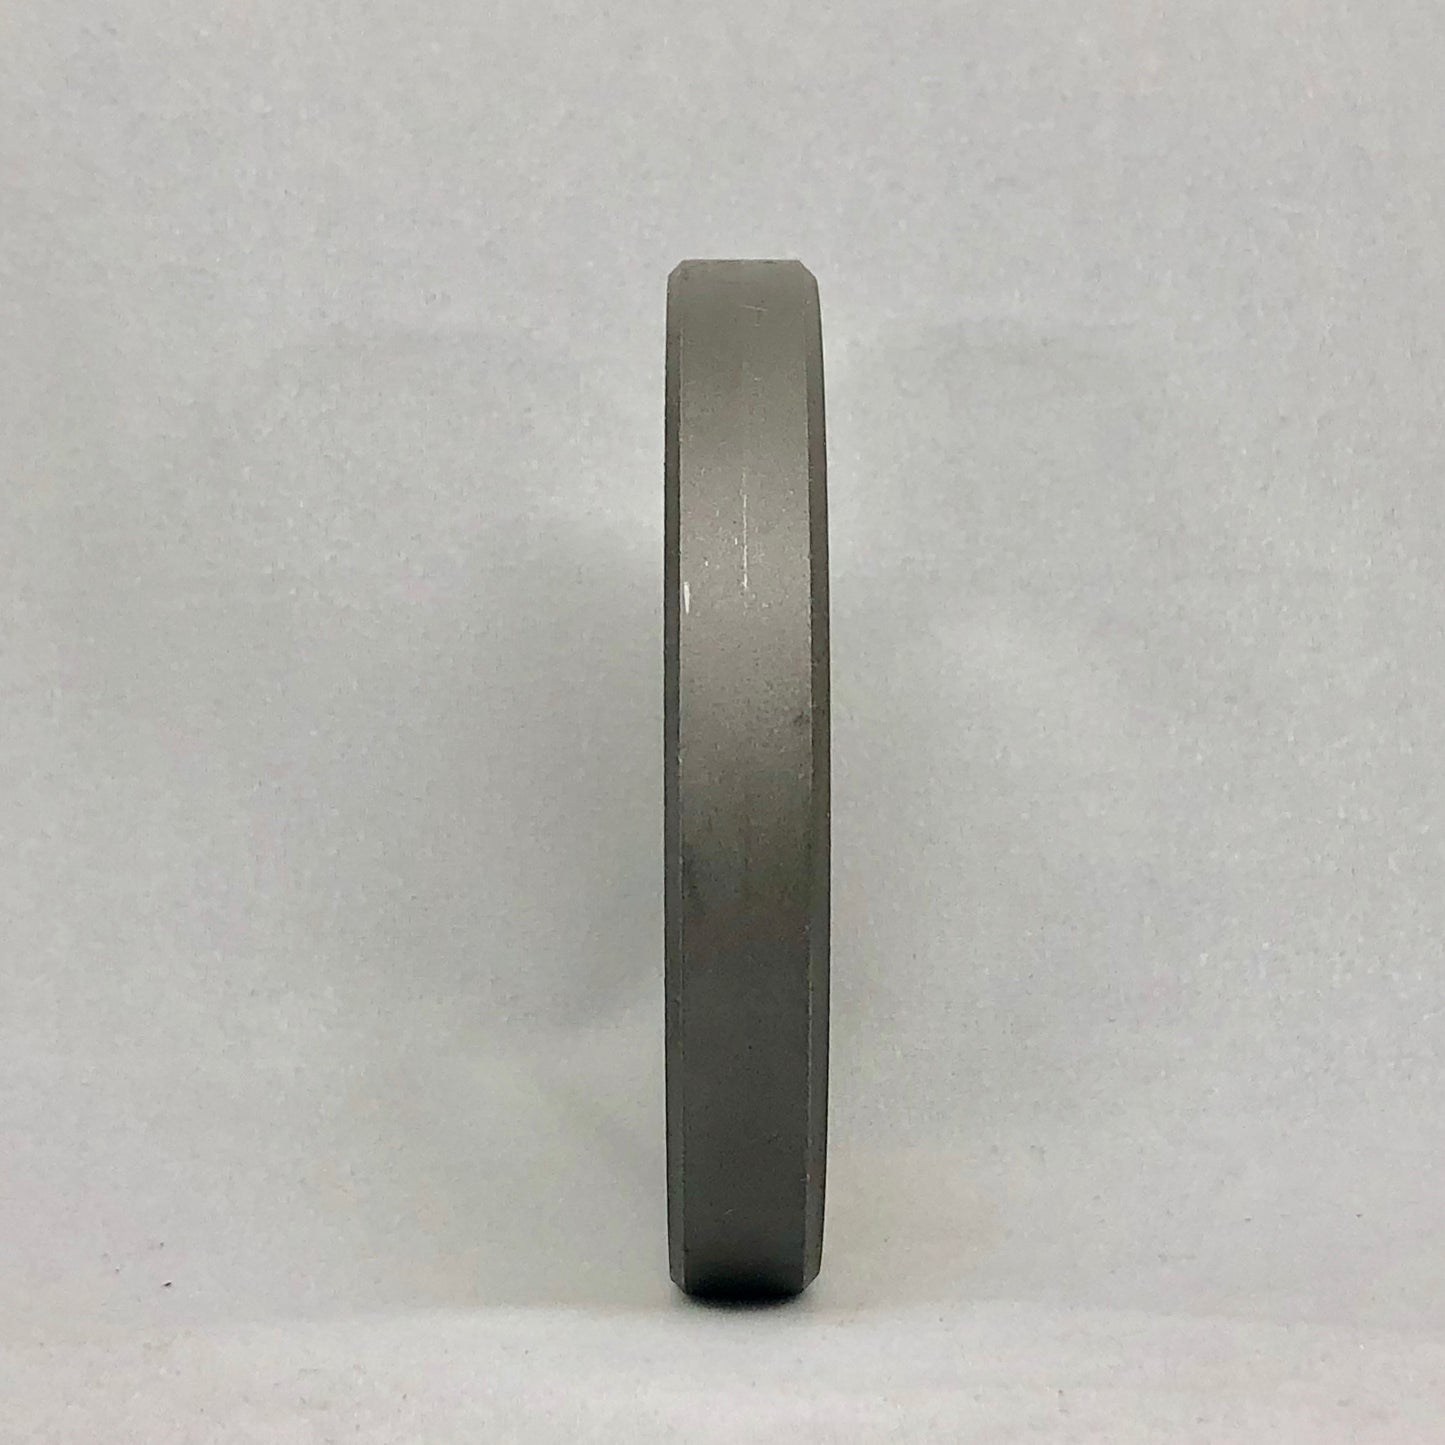 22 TRIUMPH CLEV. 5/64" HOLES - Size 22 Reversible Grinder Plate - 106351